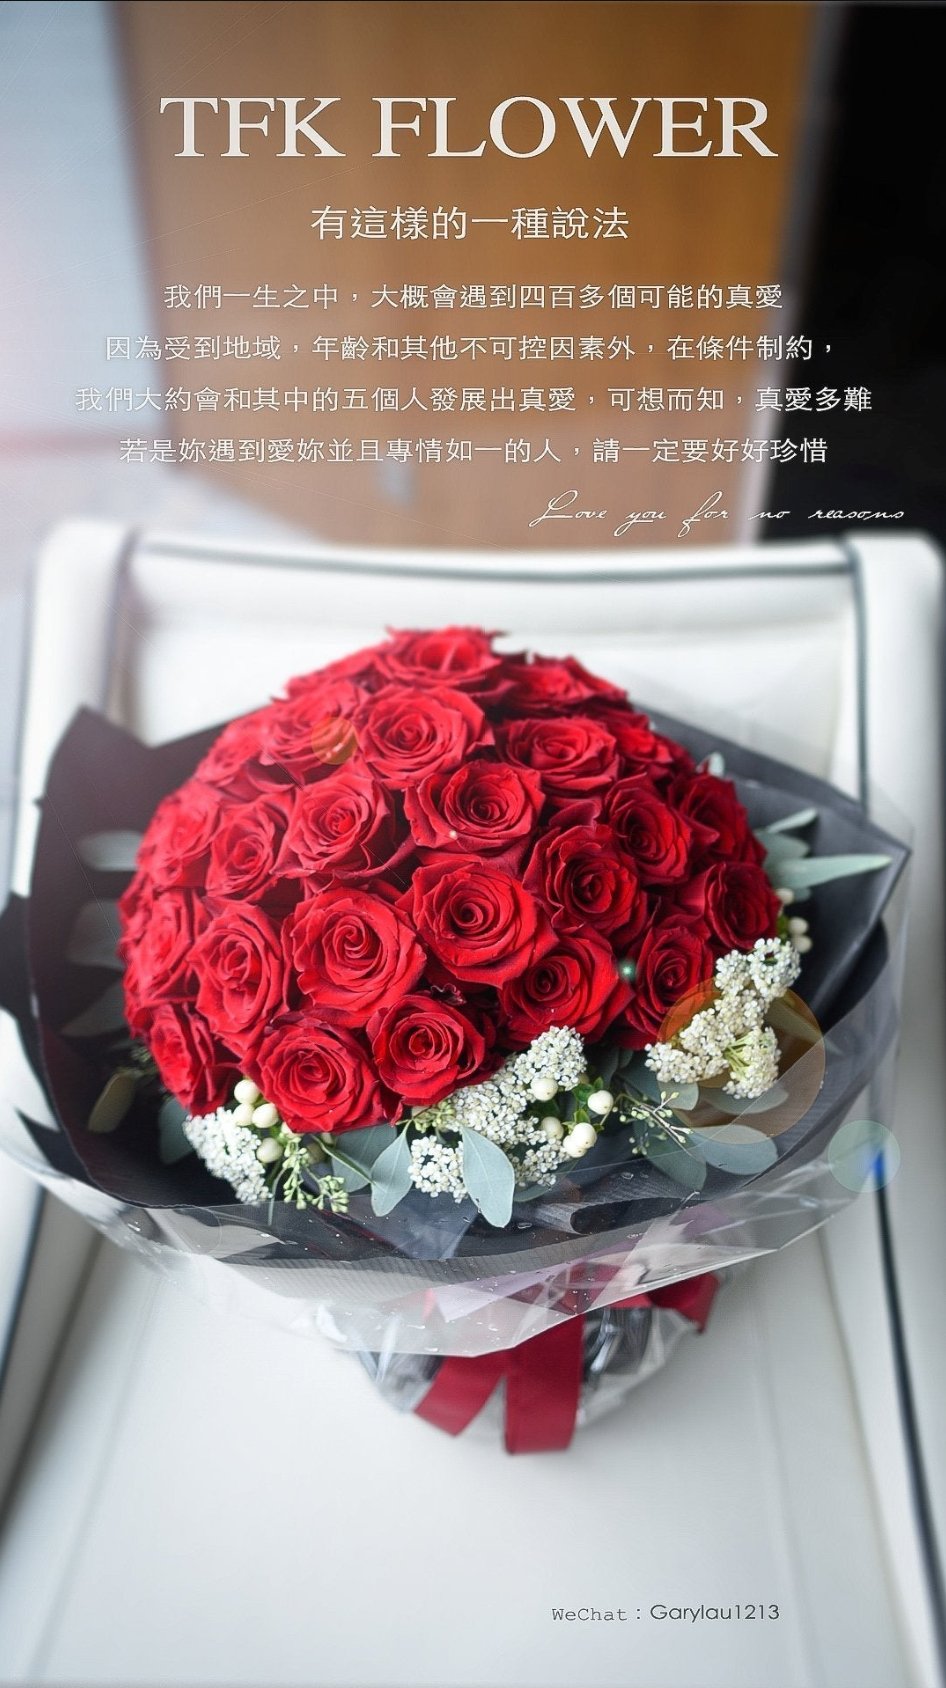 TFK PREMIUM ROSES bouquet - TFK Flower